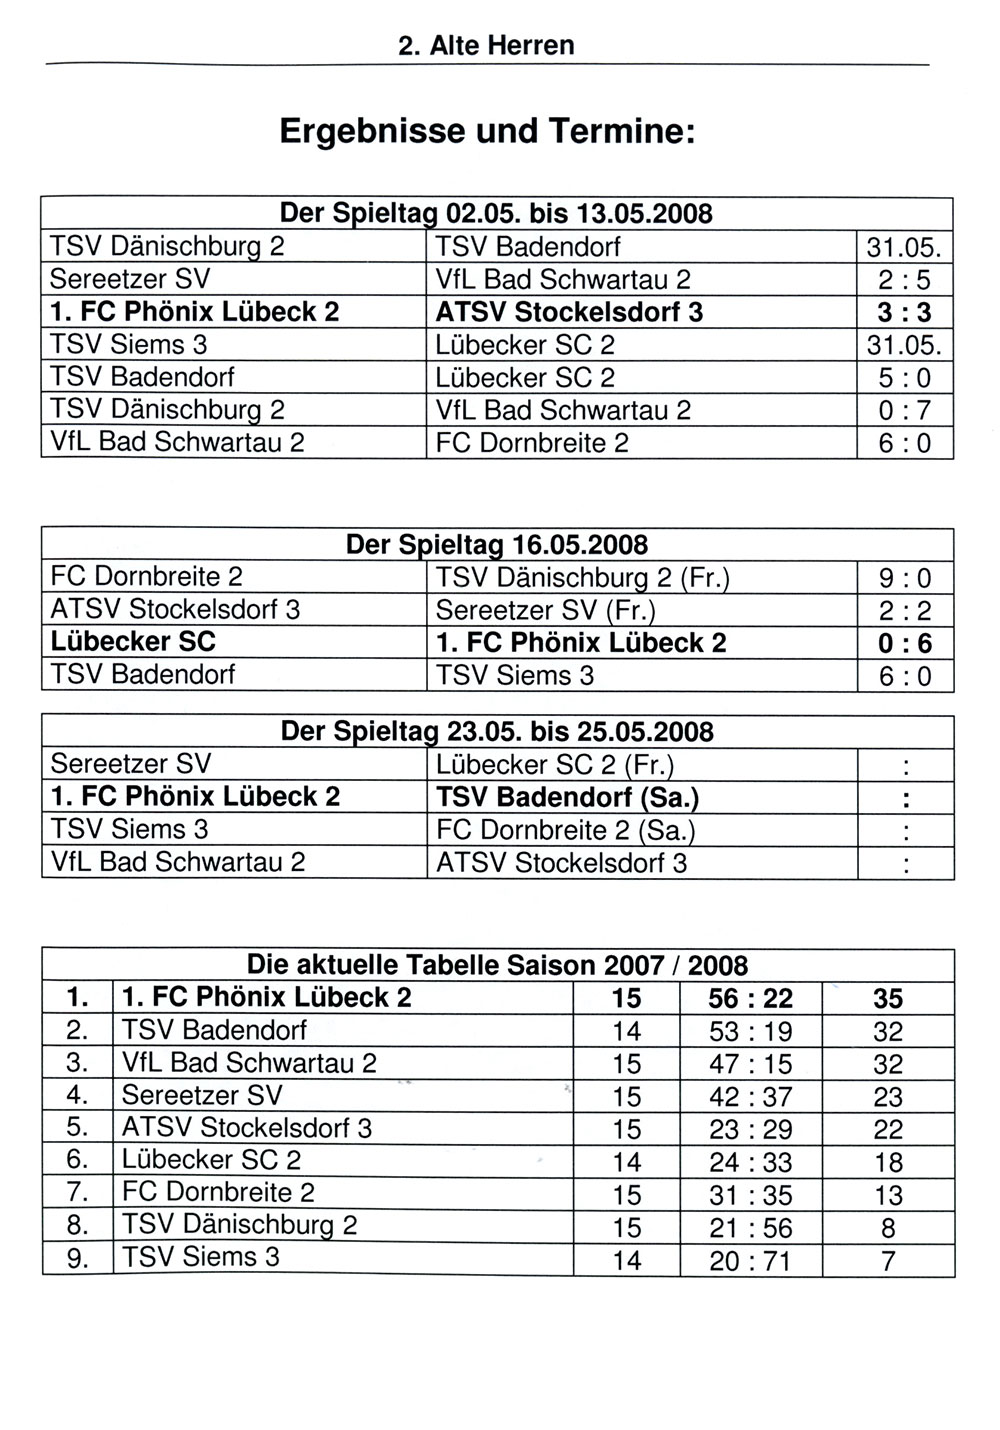 Der PHÖNIX Express Nr. 15, Saison 2007/2008